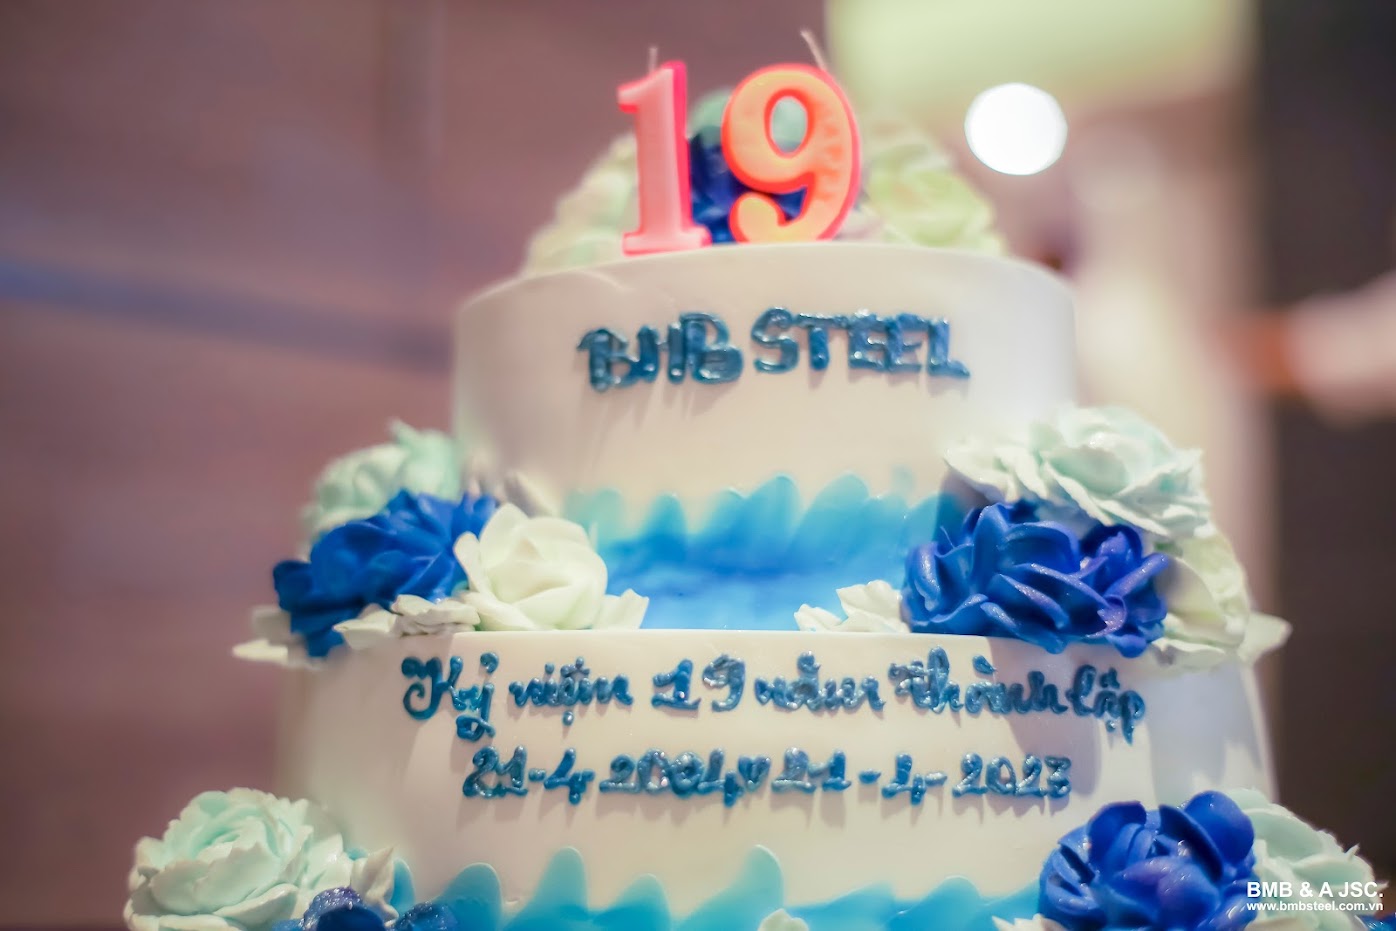 Chúc mừng sinh nhật lần thứ 19 của BMB Steel